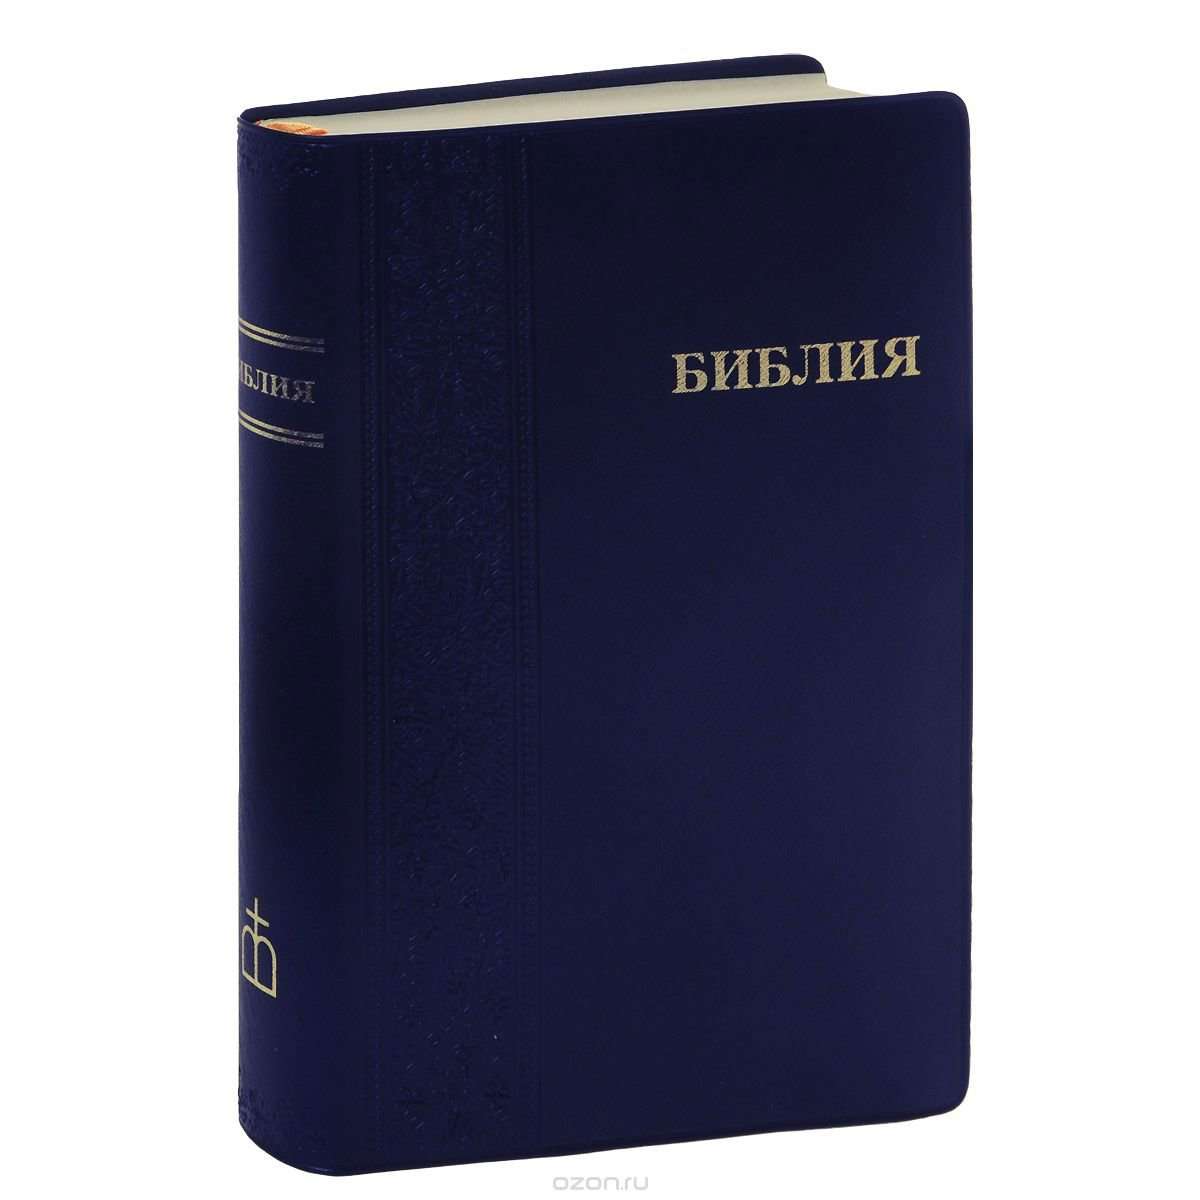 БИБ Библия сред синяя мягкартонная коробкаанонические 1113 042